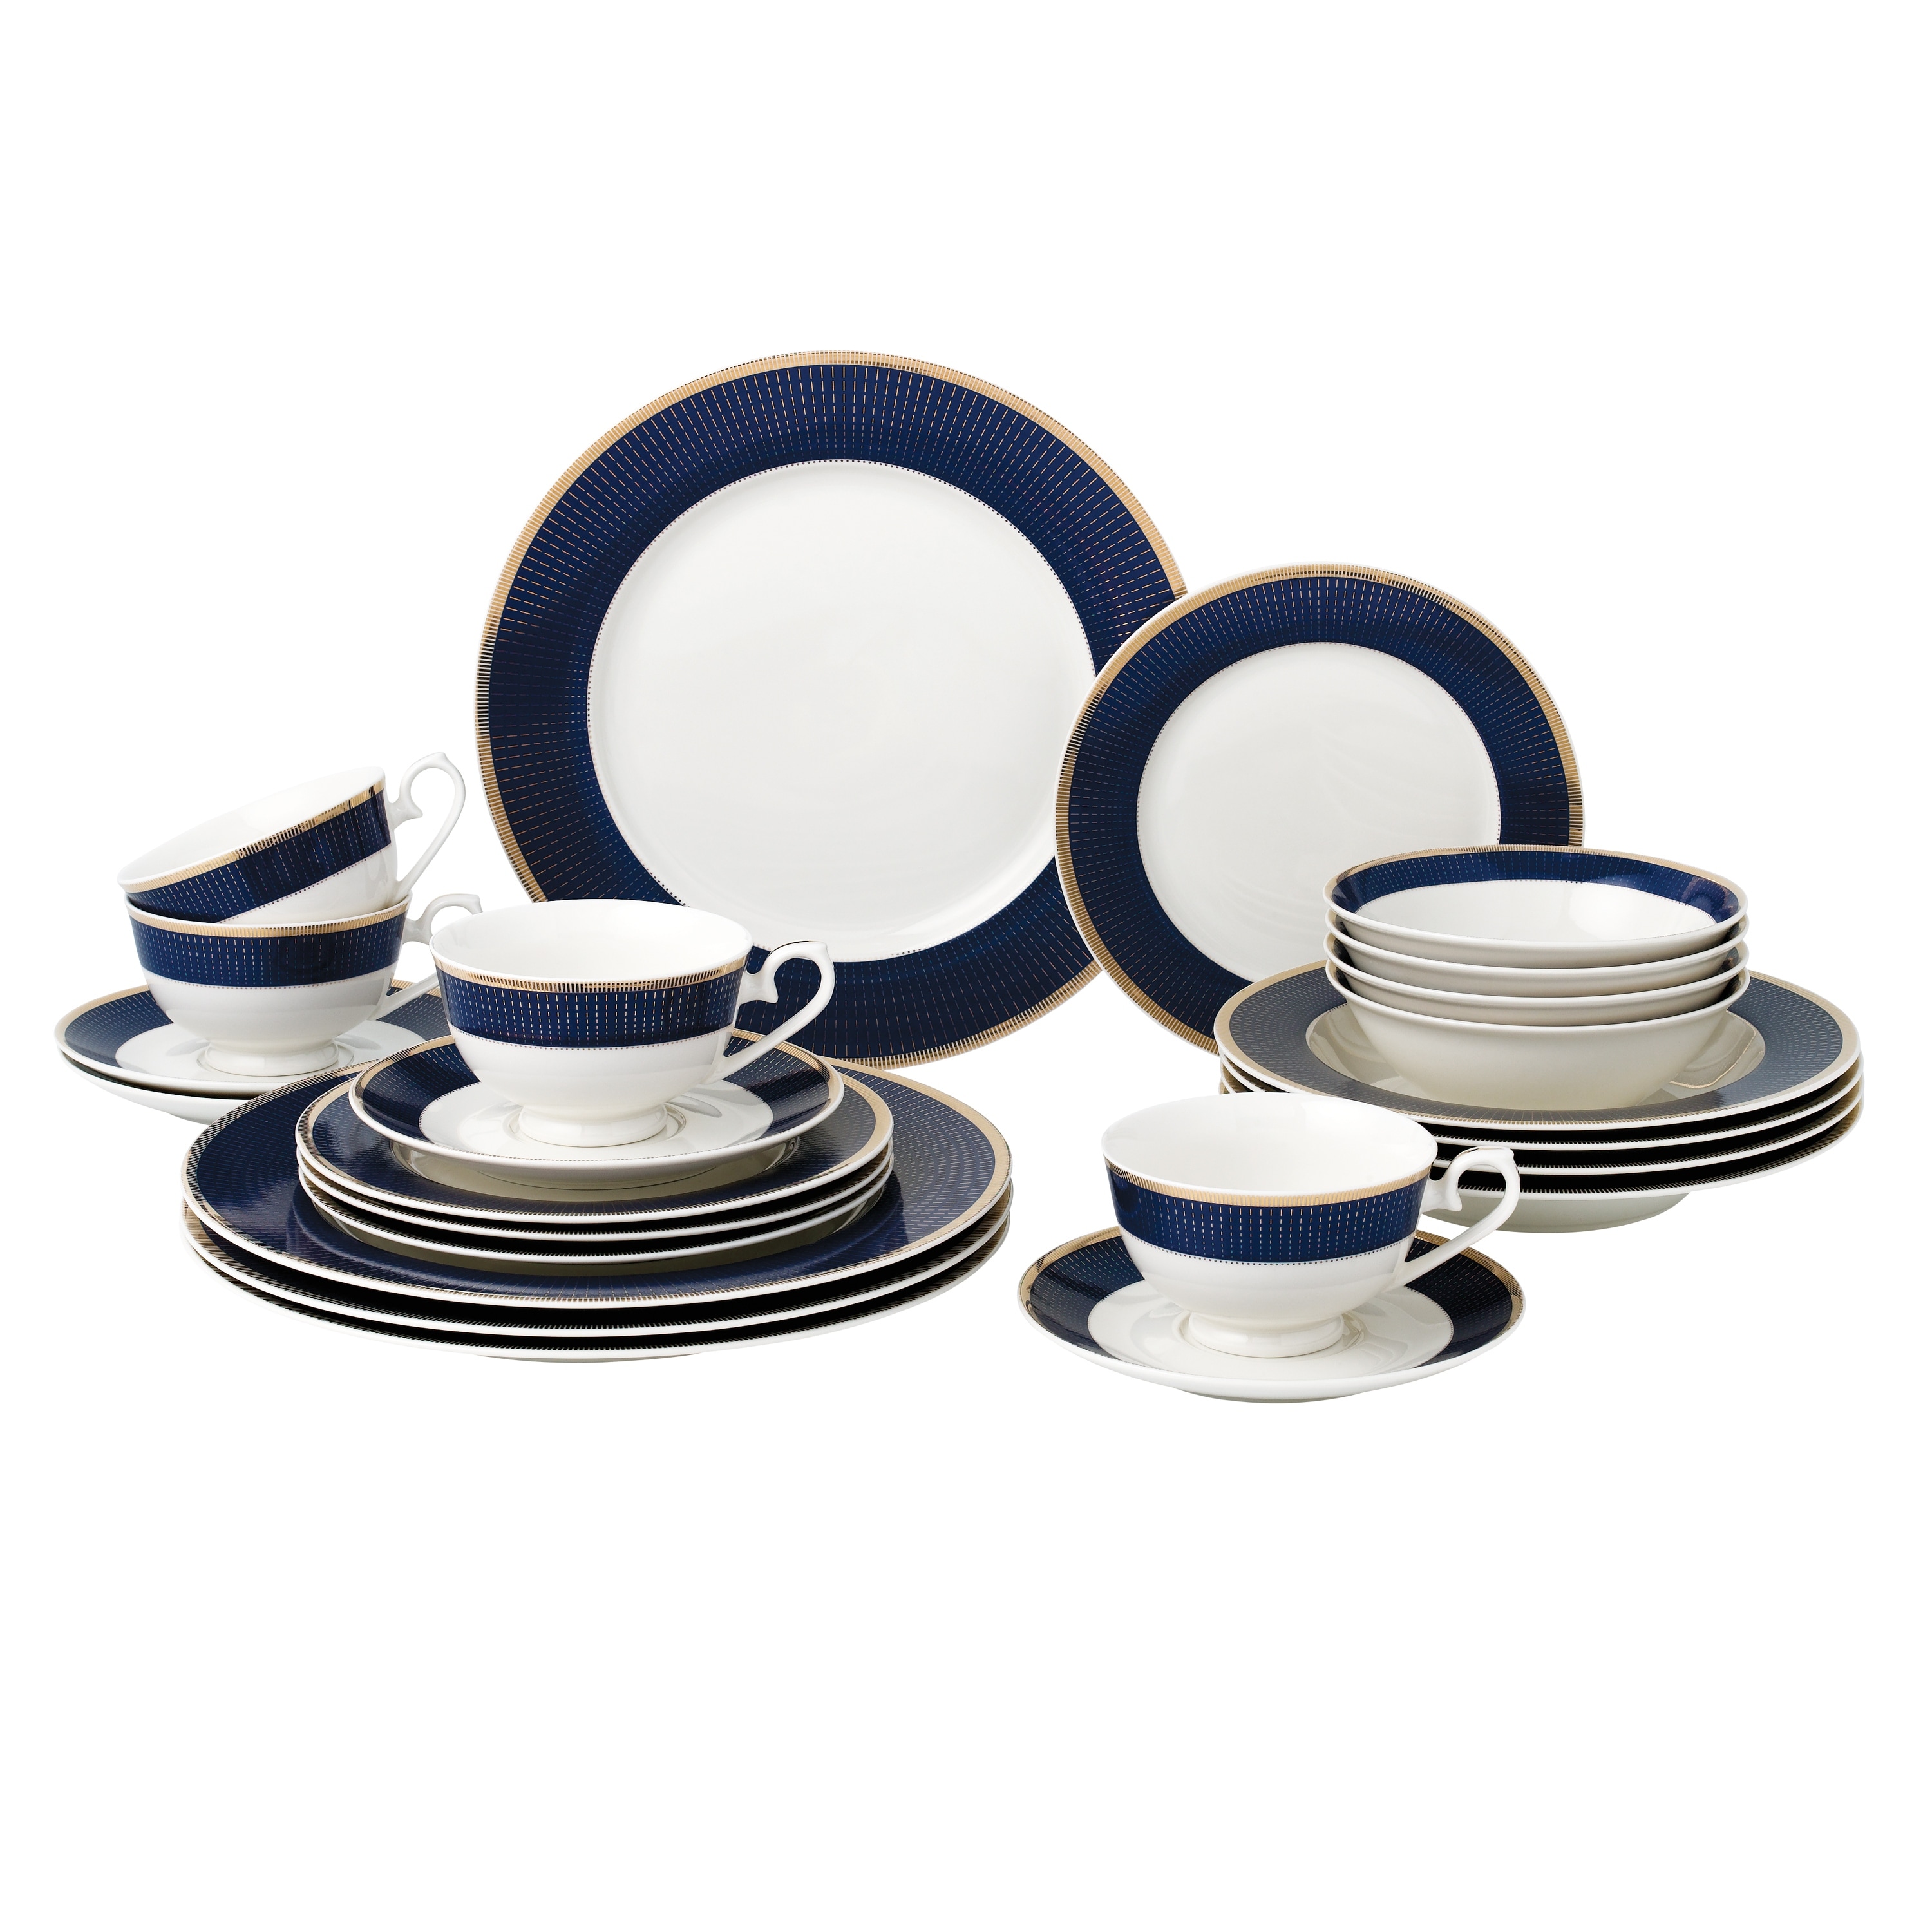 Lorren Home Trends 12 oz. Blue Floral Design Porcelain Mug (Set of 4)